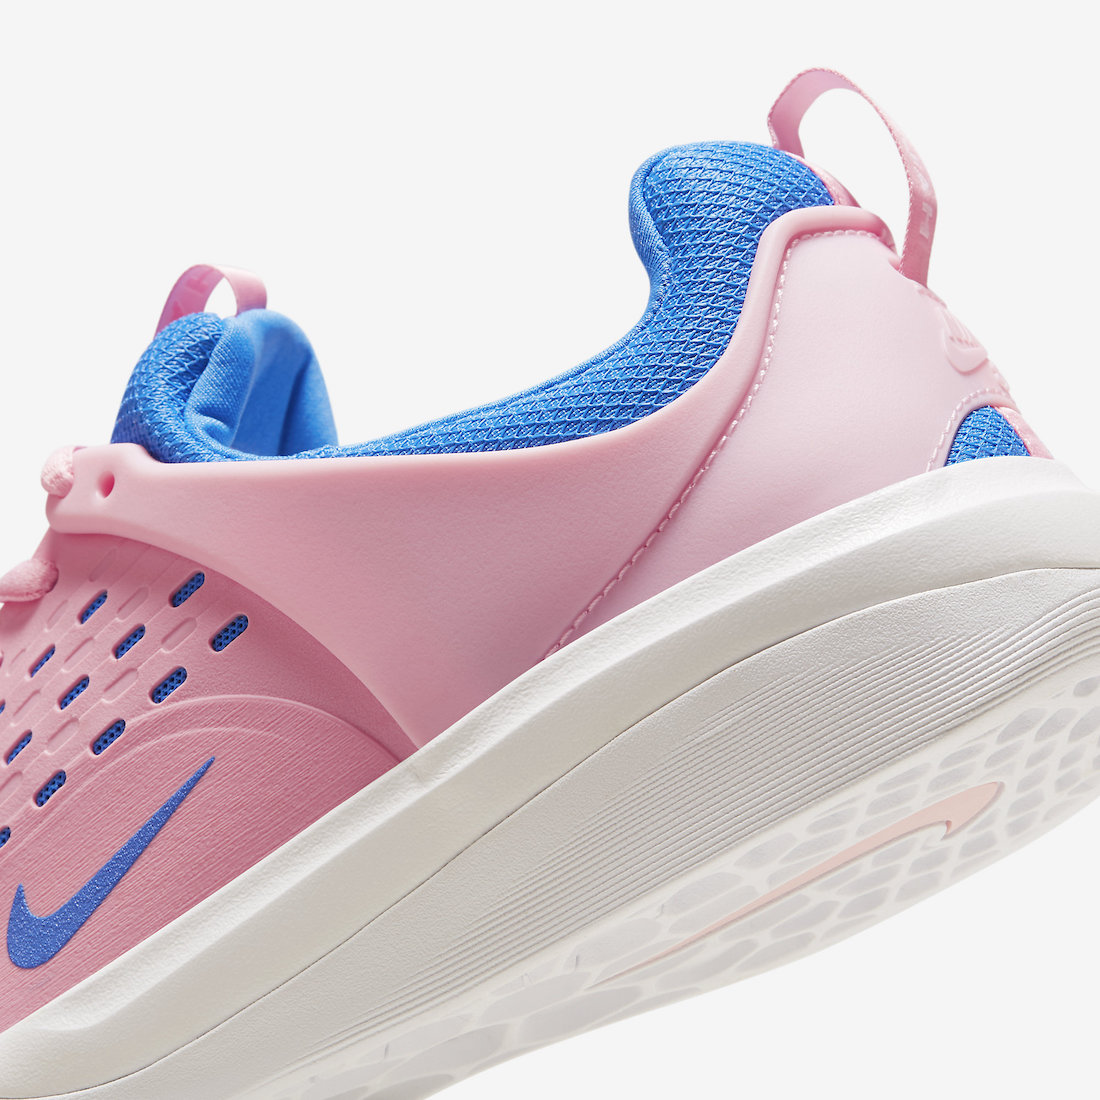 Nike SB Nyjah 3 Pink Blue DV7896-601